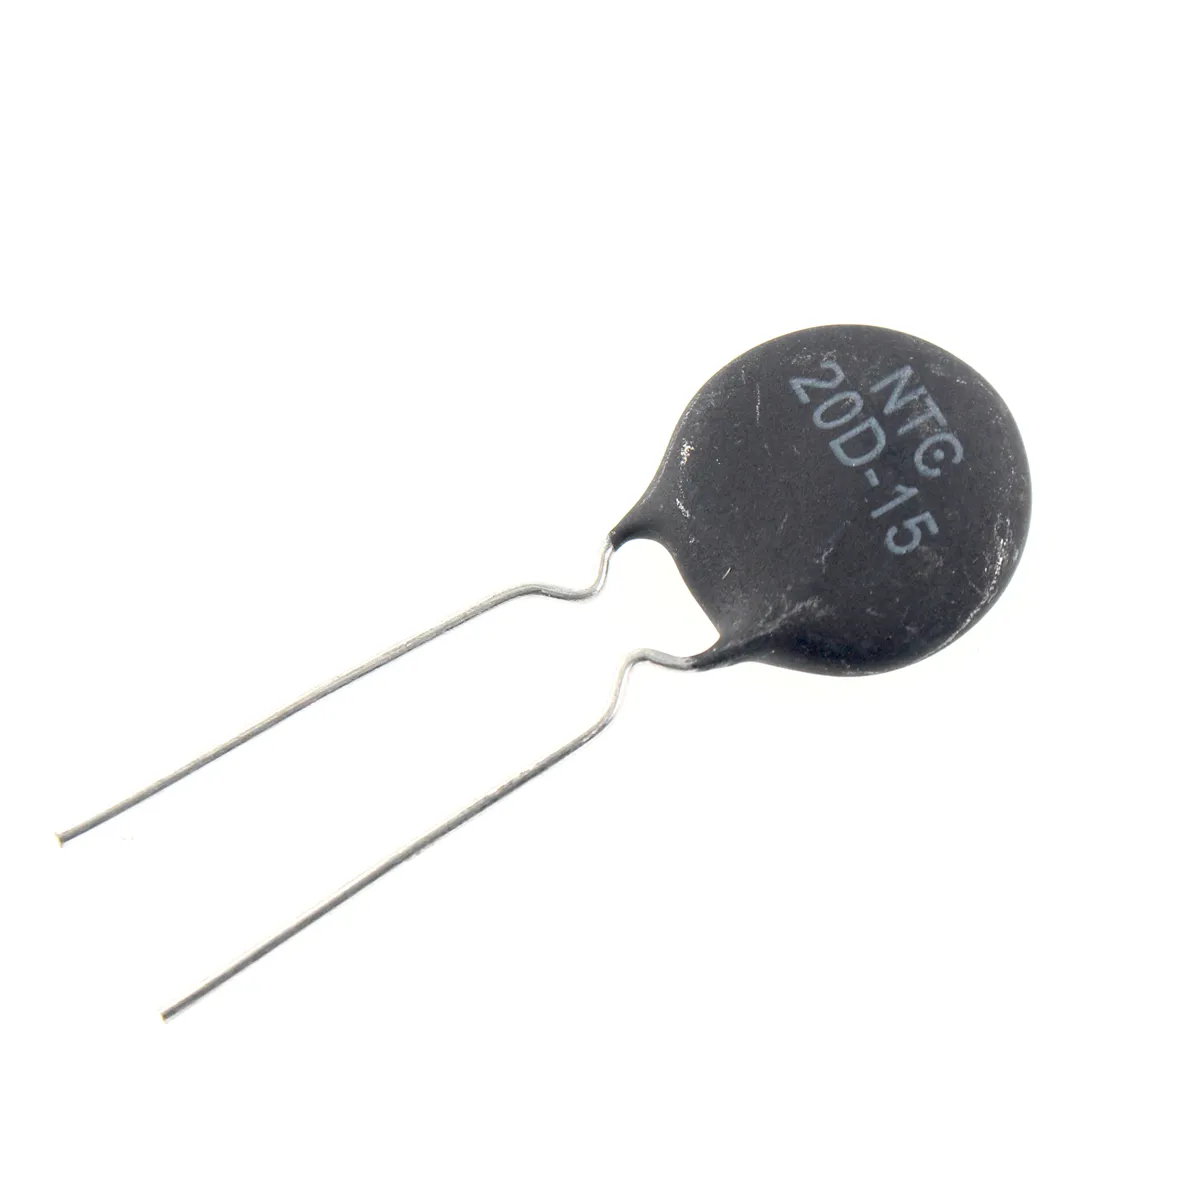 NTC Thermistance Resistor 1.5D-15 10D-15 16D-15 2.5D-15 20D-15 3D-15 47D-15 8D-15 15D-15 22D-15 30D-15 5D-15